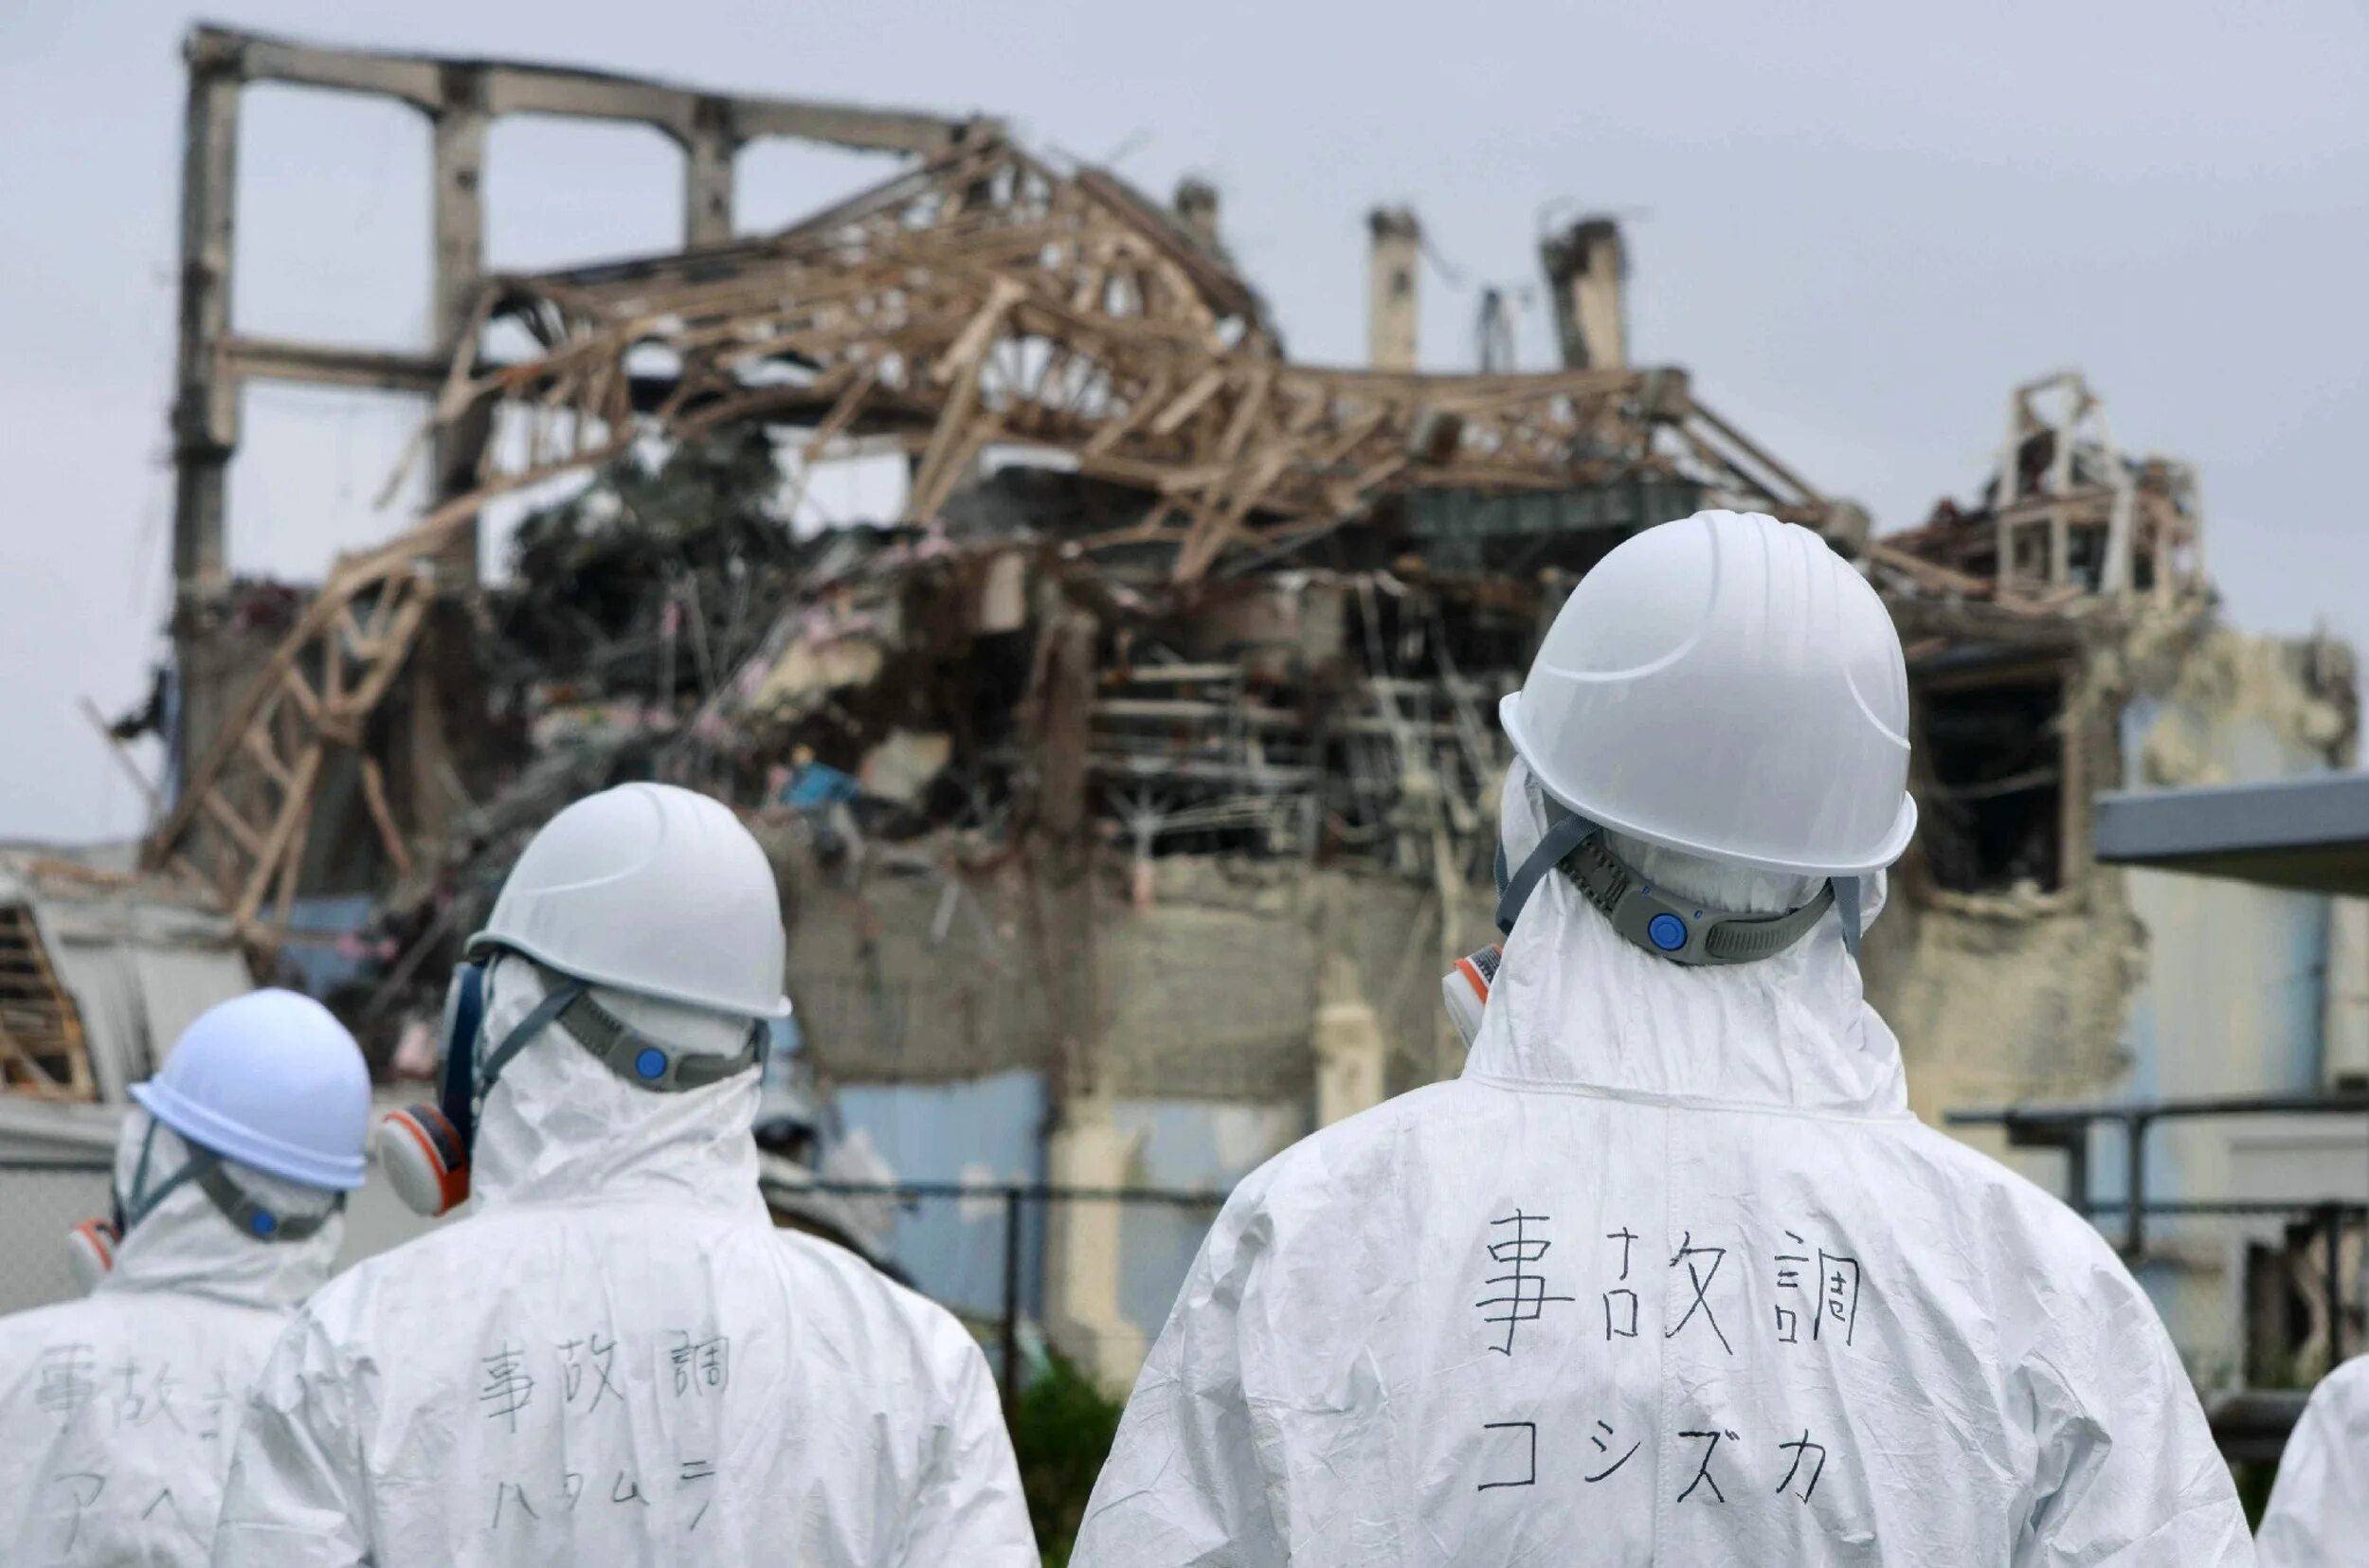 Японии на АЭС «Фукусима-1». Авария на АЭС Фукусима-1. АЭС Фукусима-1, Япония, 2011. АЭС Фукусима 2011. Аэс фукусима 1 2011